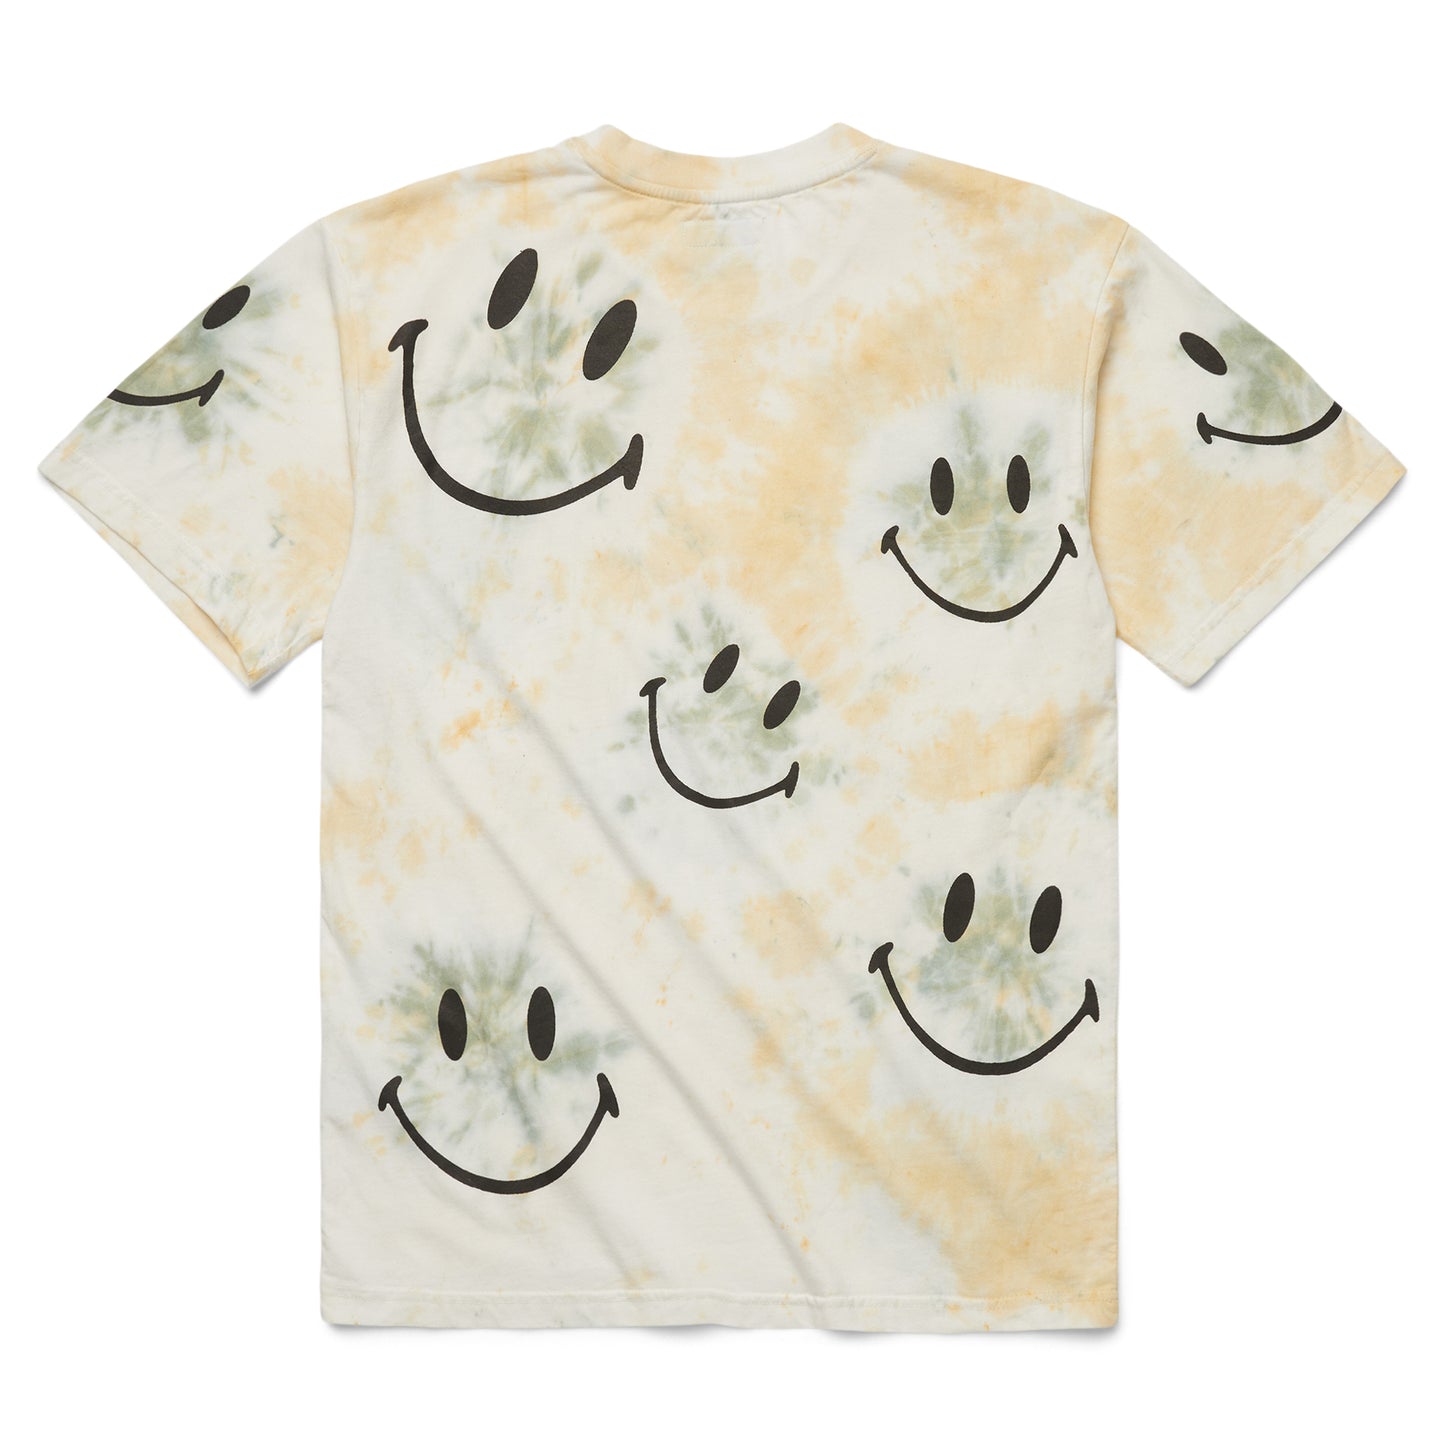 MARKET Smiley Shibori Dye T-Shirt